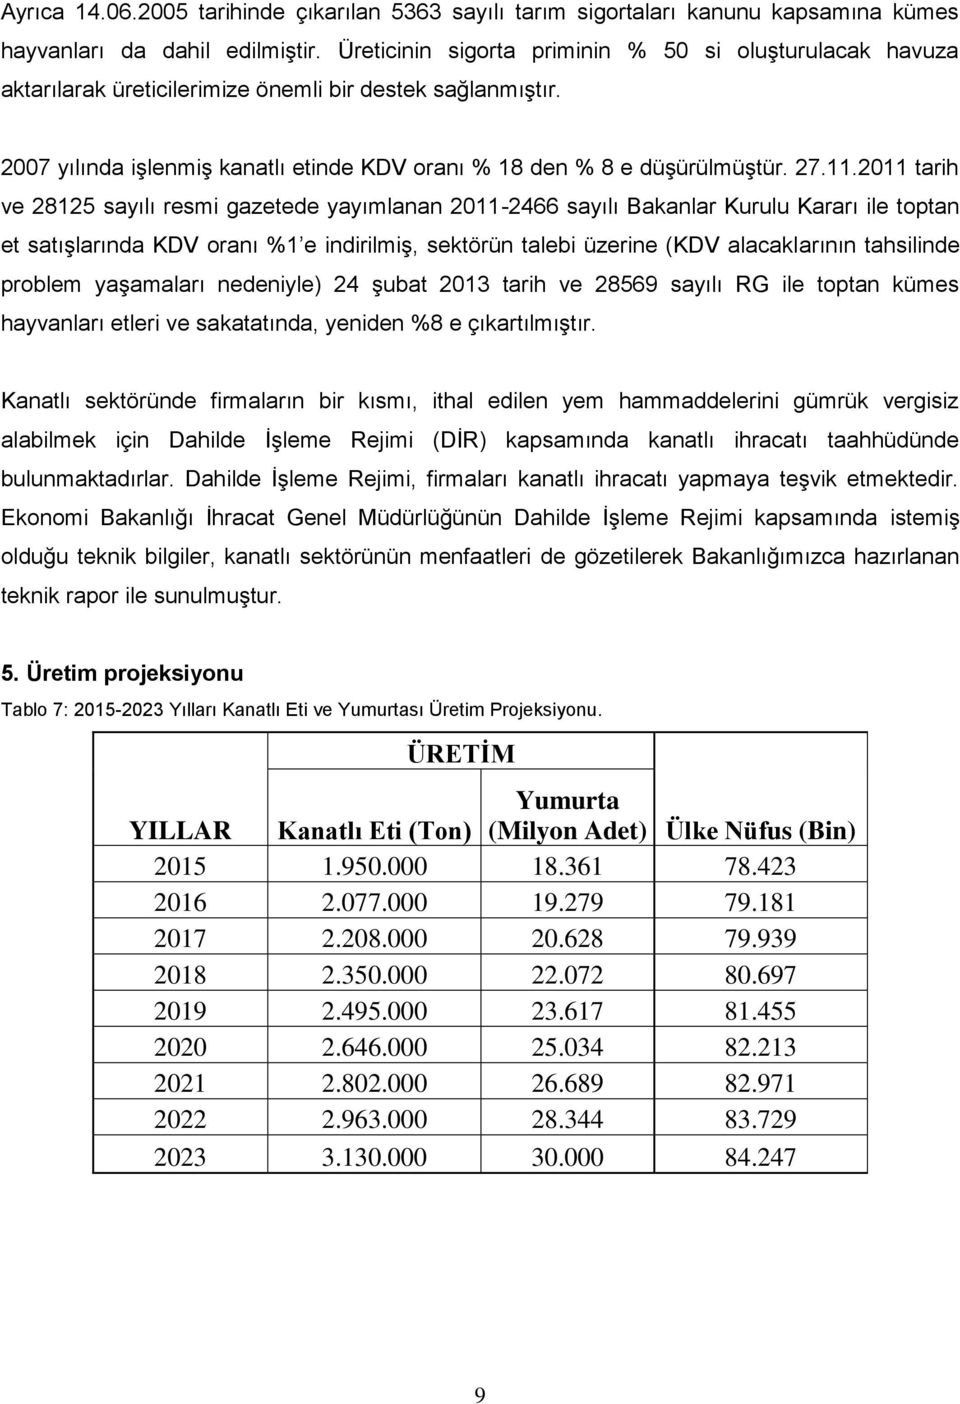 2011 tarih ve 28125 sayılı resmi gazetede yayımlanan 2011-2466 sayılı Bakanlar Kurulu Kararı ile toptan et satışlarında KDV oranı %1 e indirilmiş, sektörün talebi üzerine (KDV alacaklarının